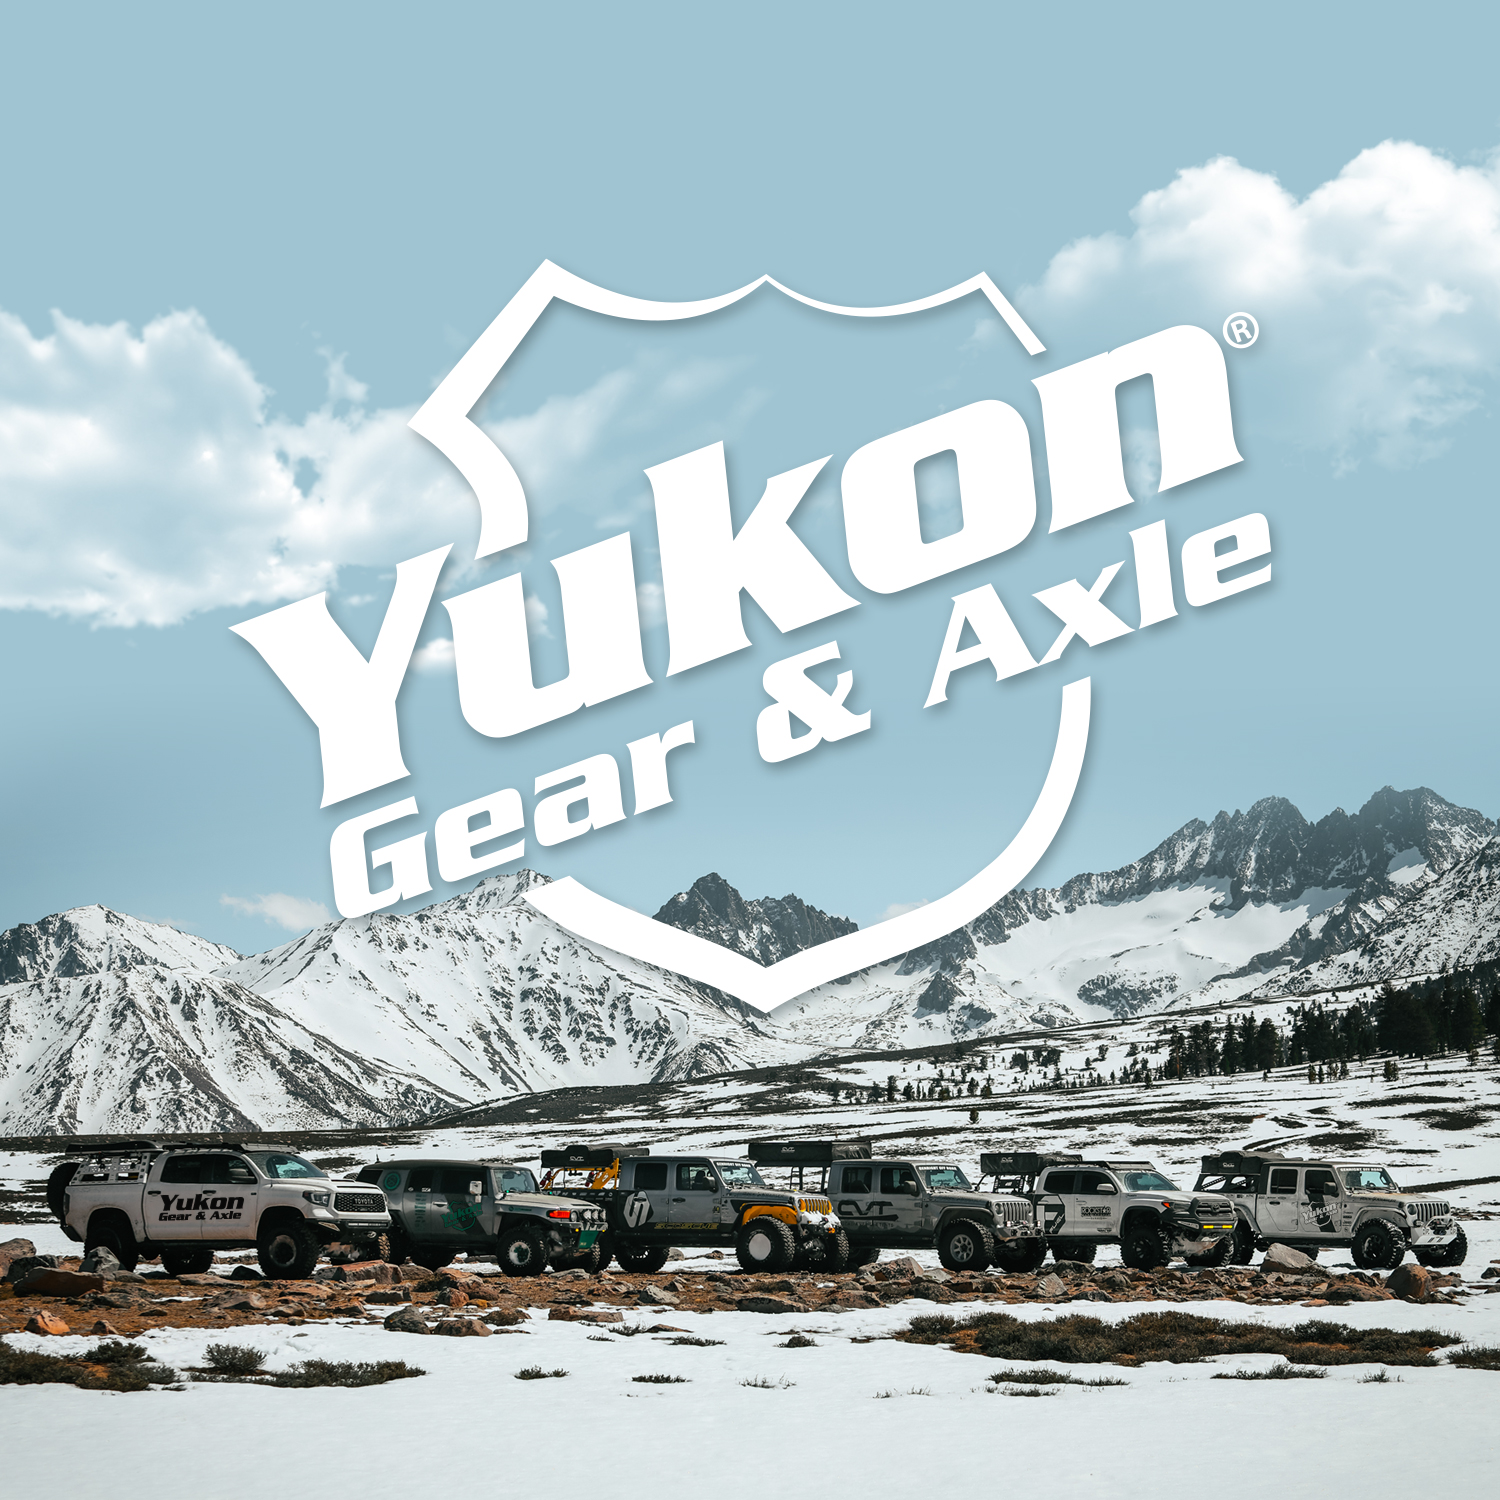 Yukon Chromoly Inner Front Axle for Dana 44 Diff, 30 Spline, LH, 32.91” Long 